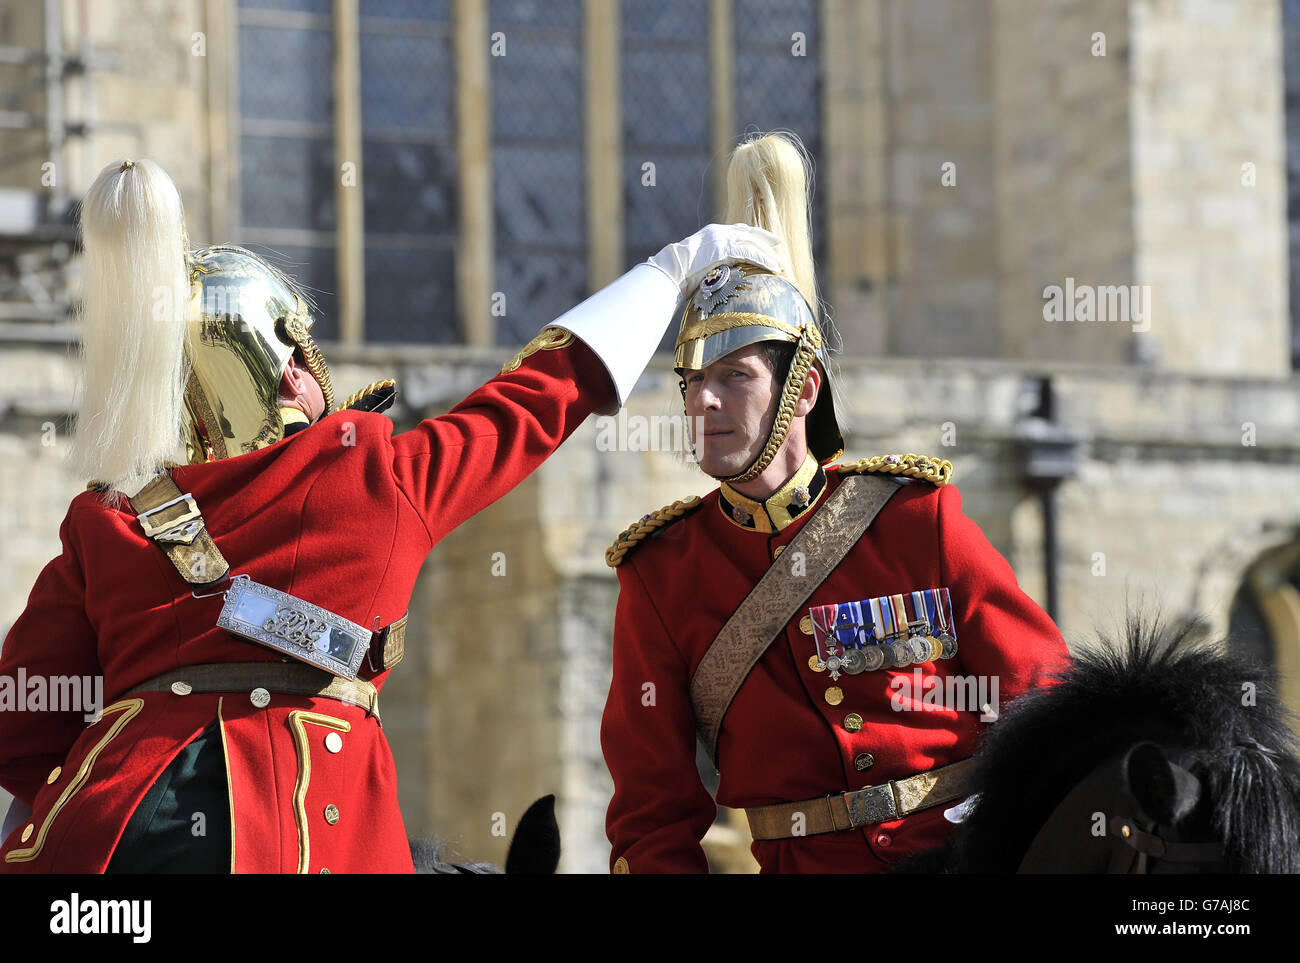 Eine helfende Hand für eine eigensinnige Wolke auf dem zeremoniellen Helm einer königlichen Dragoonensgarde, als sie sich auf den Weg vom York Minster vorbereiteten, wo sie durch die Stadt zogen und dann im Rahmen der Gedenkfeiern des Ersten Weltkriegs einen Gottesdienst im Münster abhielten. Stockfoto